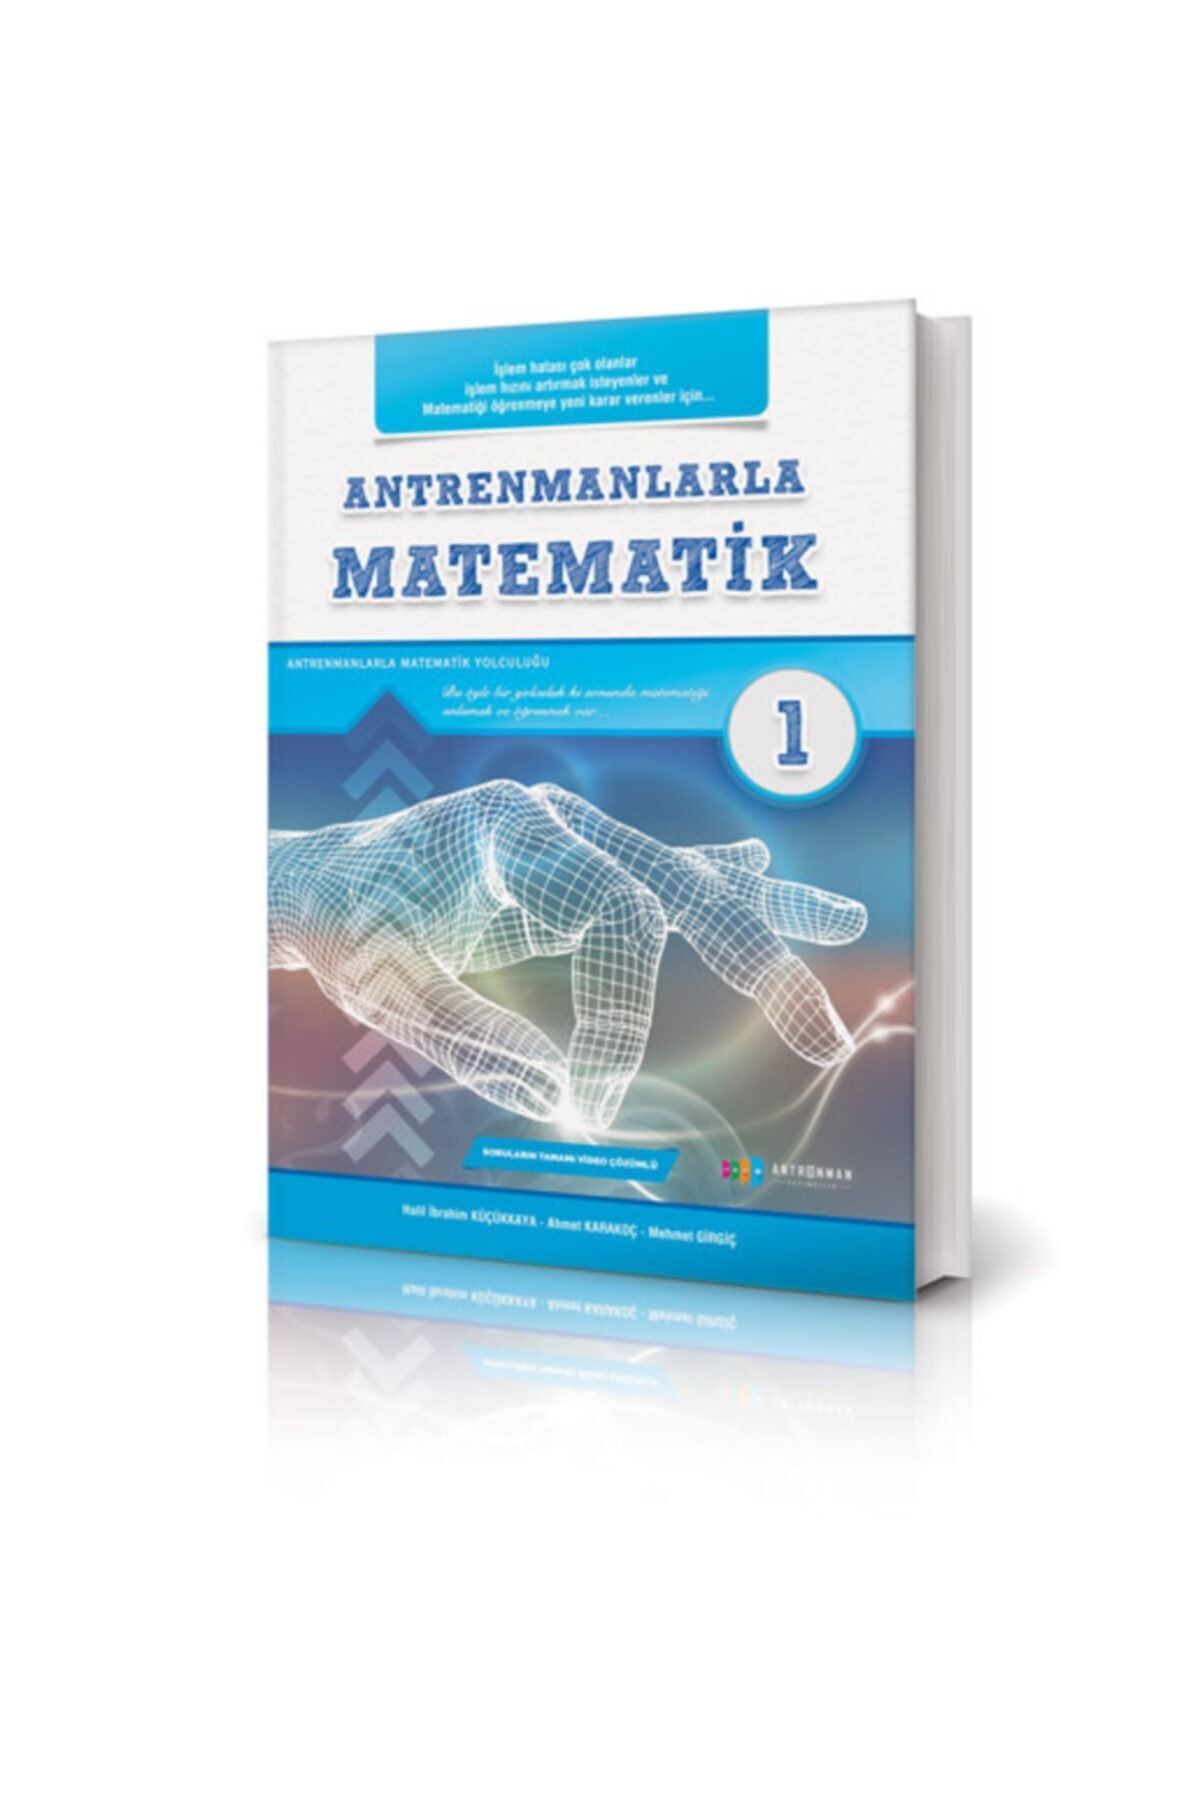 Antrenman Yayıncılık Antrenmanlarla Matematik-1